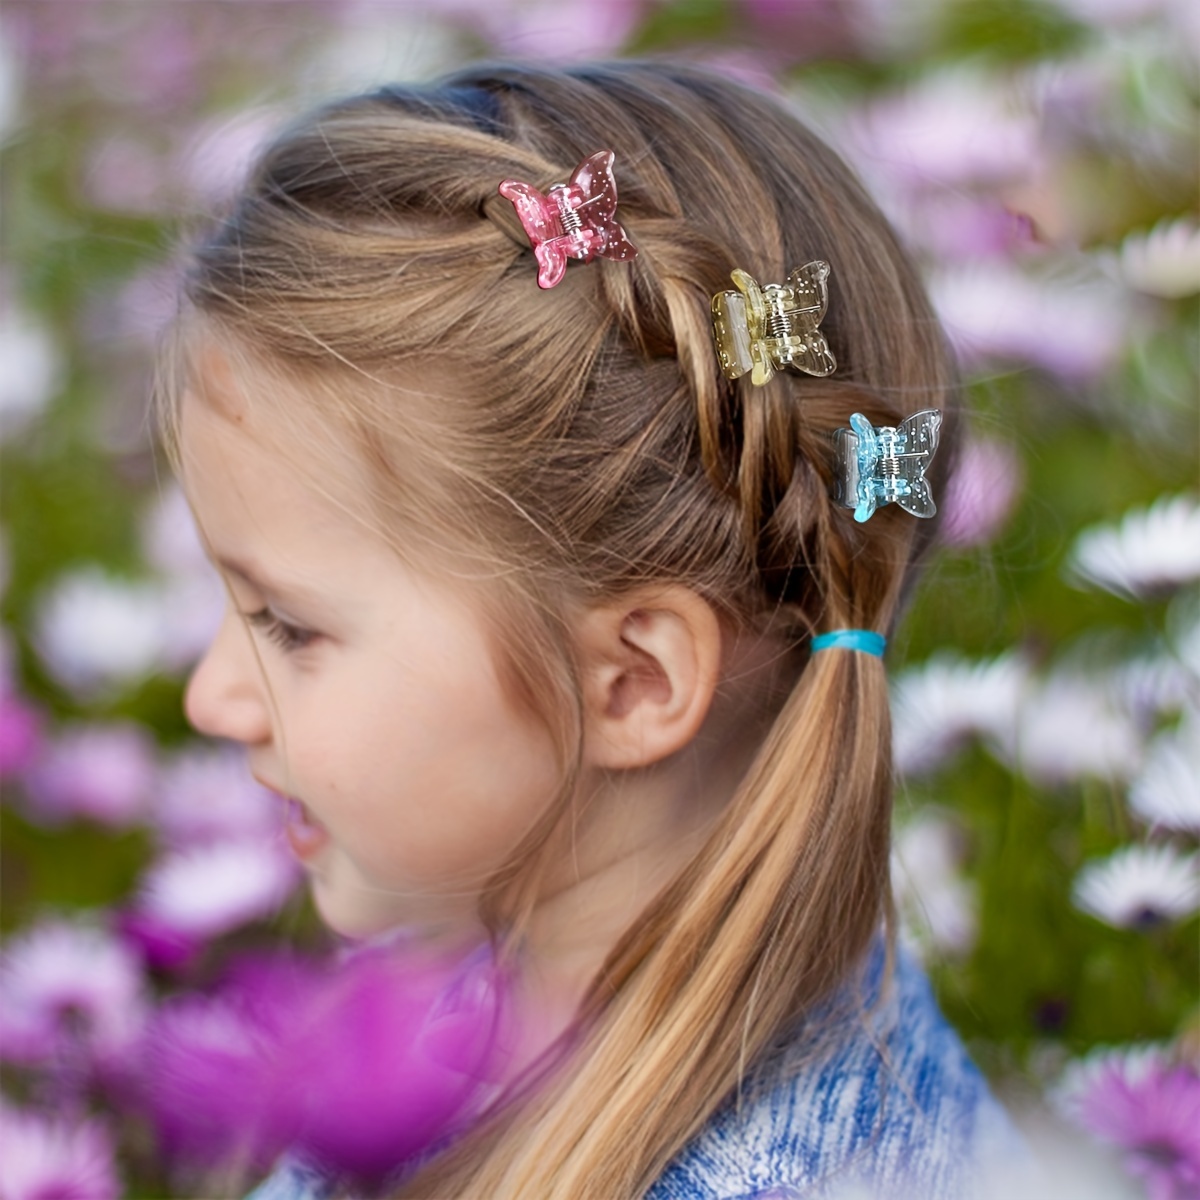 Baby Headwear Cute Hair Clips Accessories For Kids Children Hair